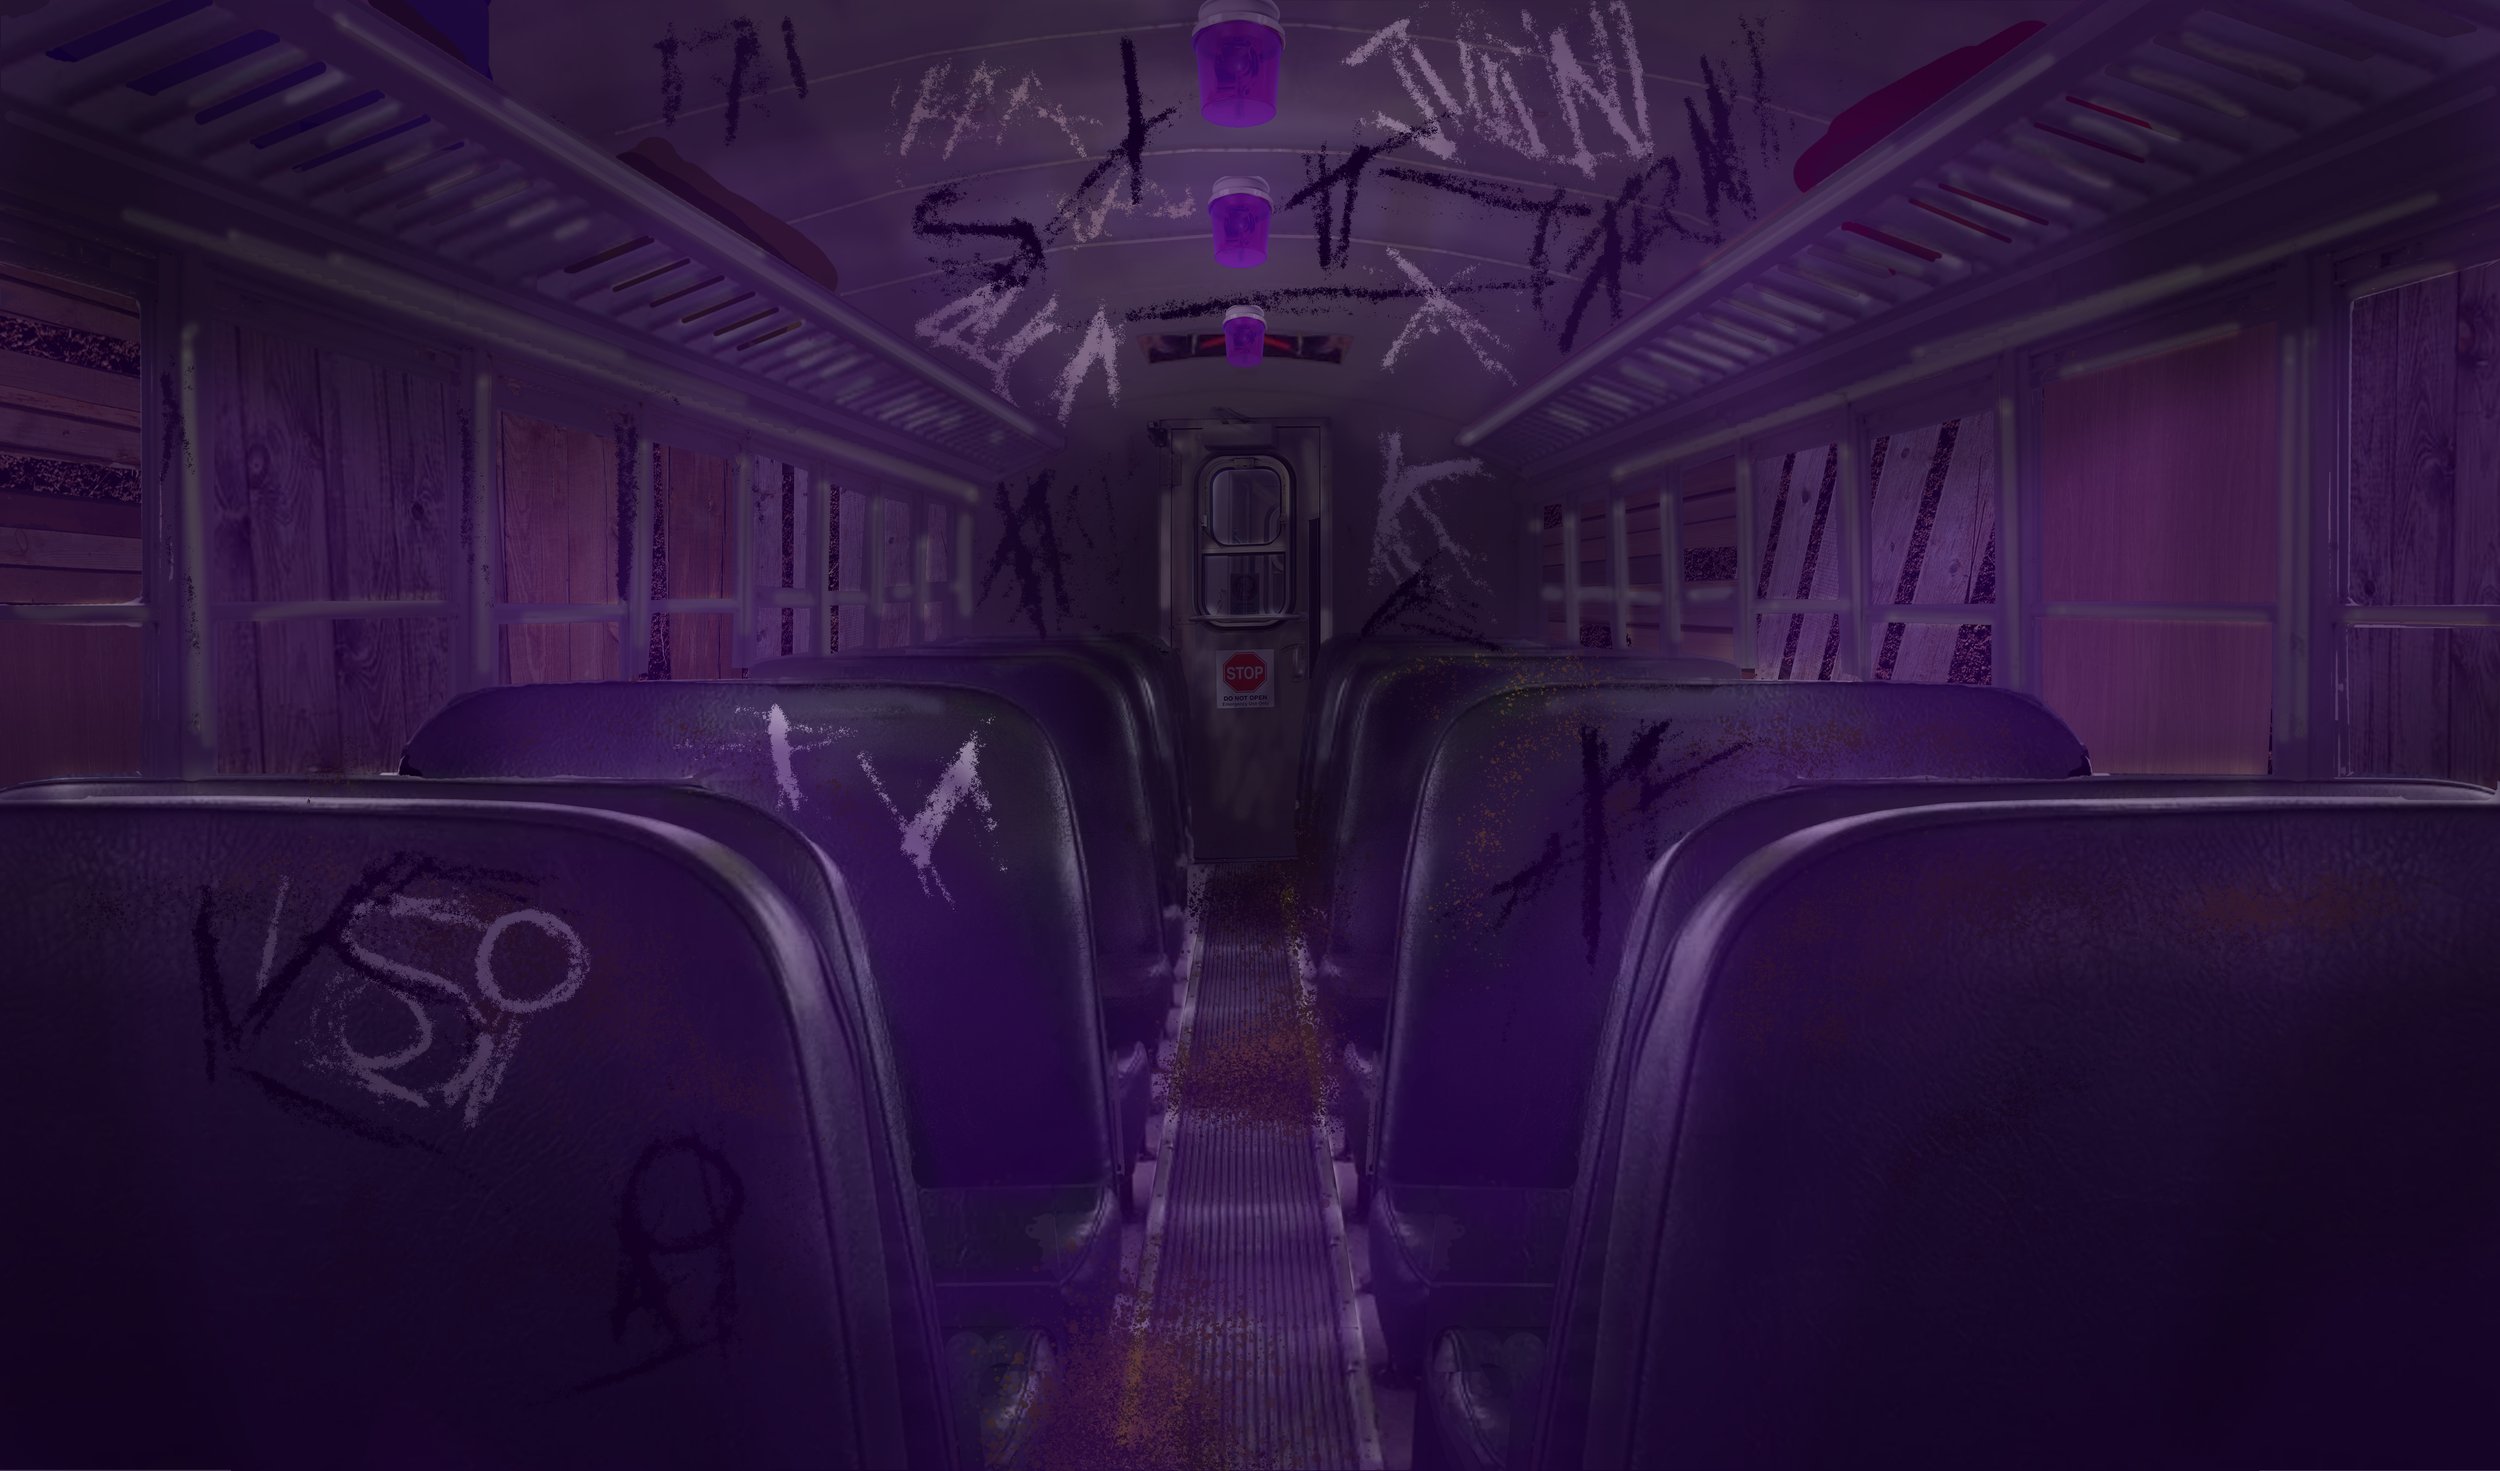  Train interior rendering 